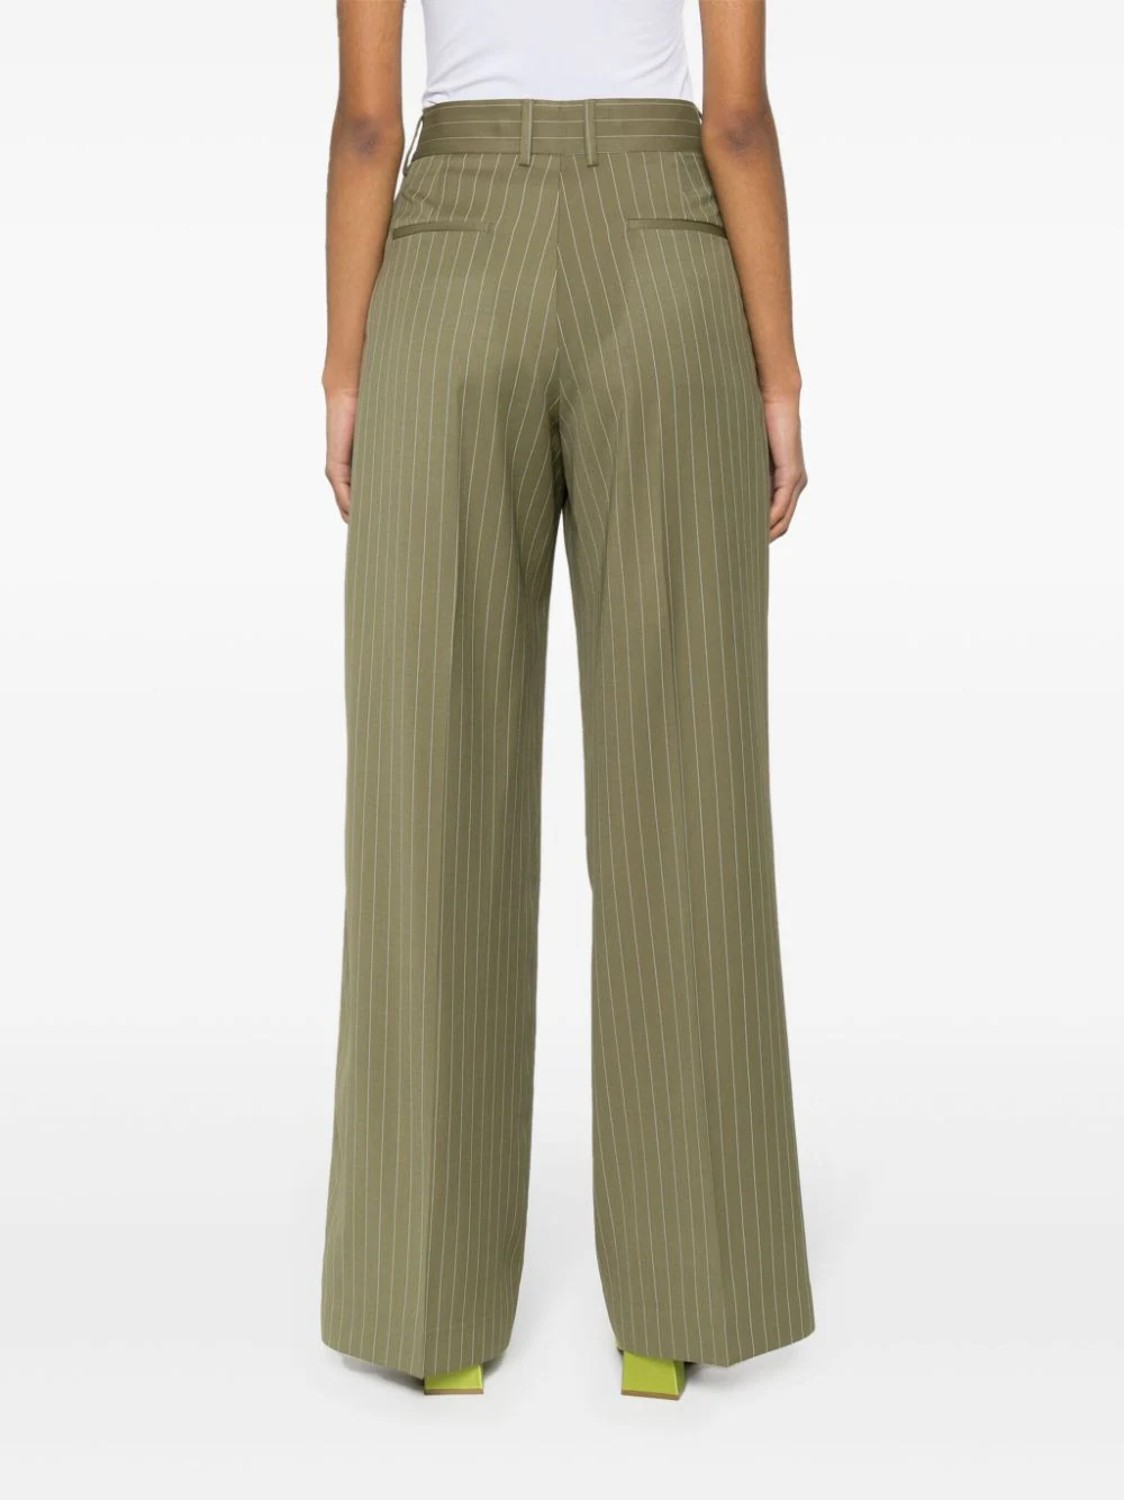 shop MSGM  Pantaloni: Pantaloni MSGM, modello dritto, vita alta, tasche laterali e posteriori, in fresco di lana, gessato.

Composizione: 100% lana. number 2686